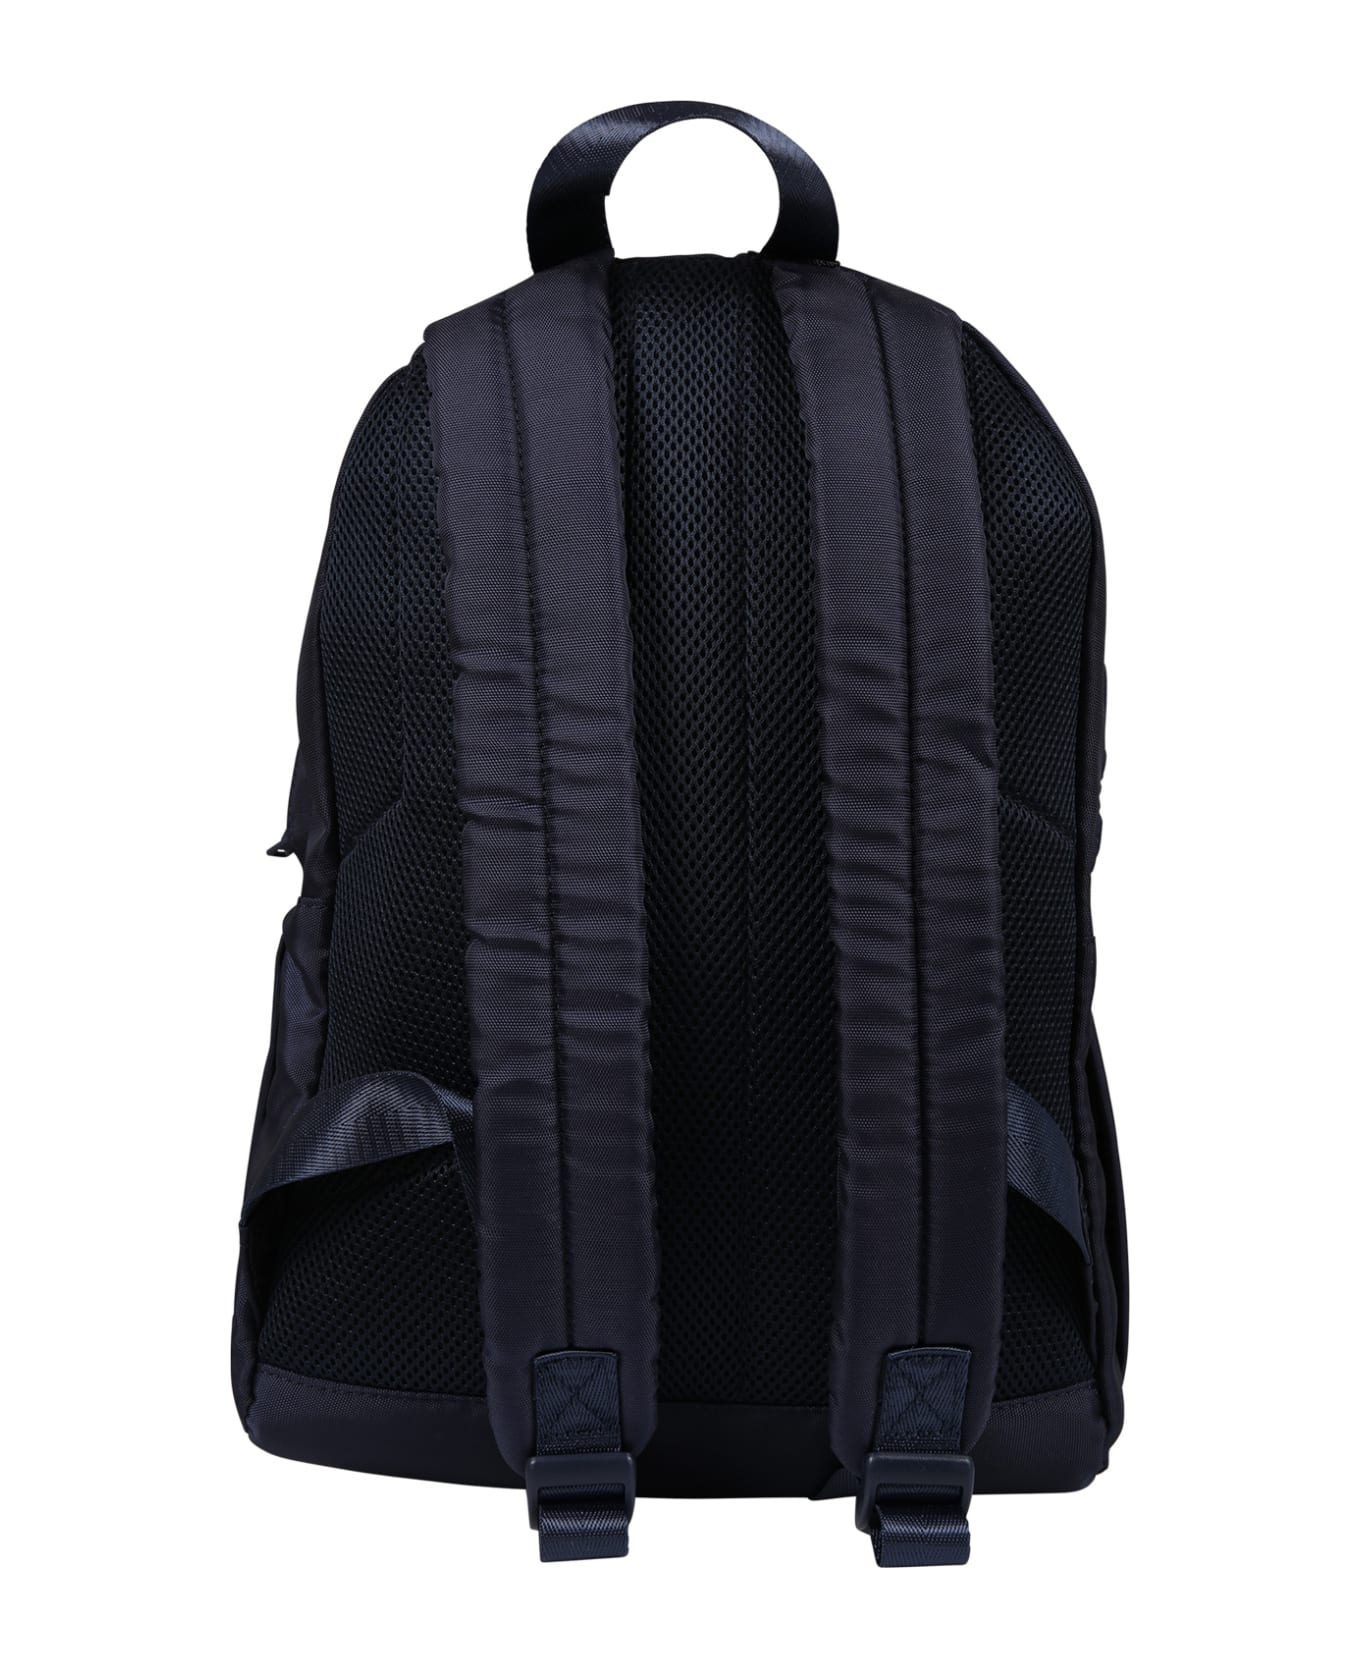 Hugo Boss Bleu Backpack For Boy With Logo - Blue アクセサリー＆ギフト